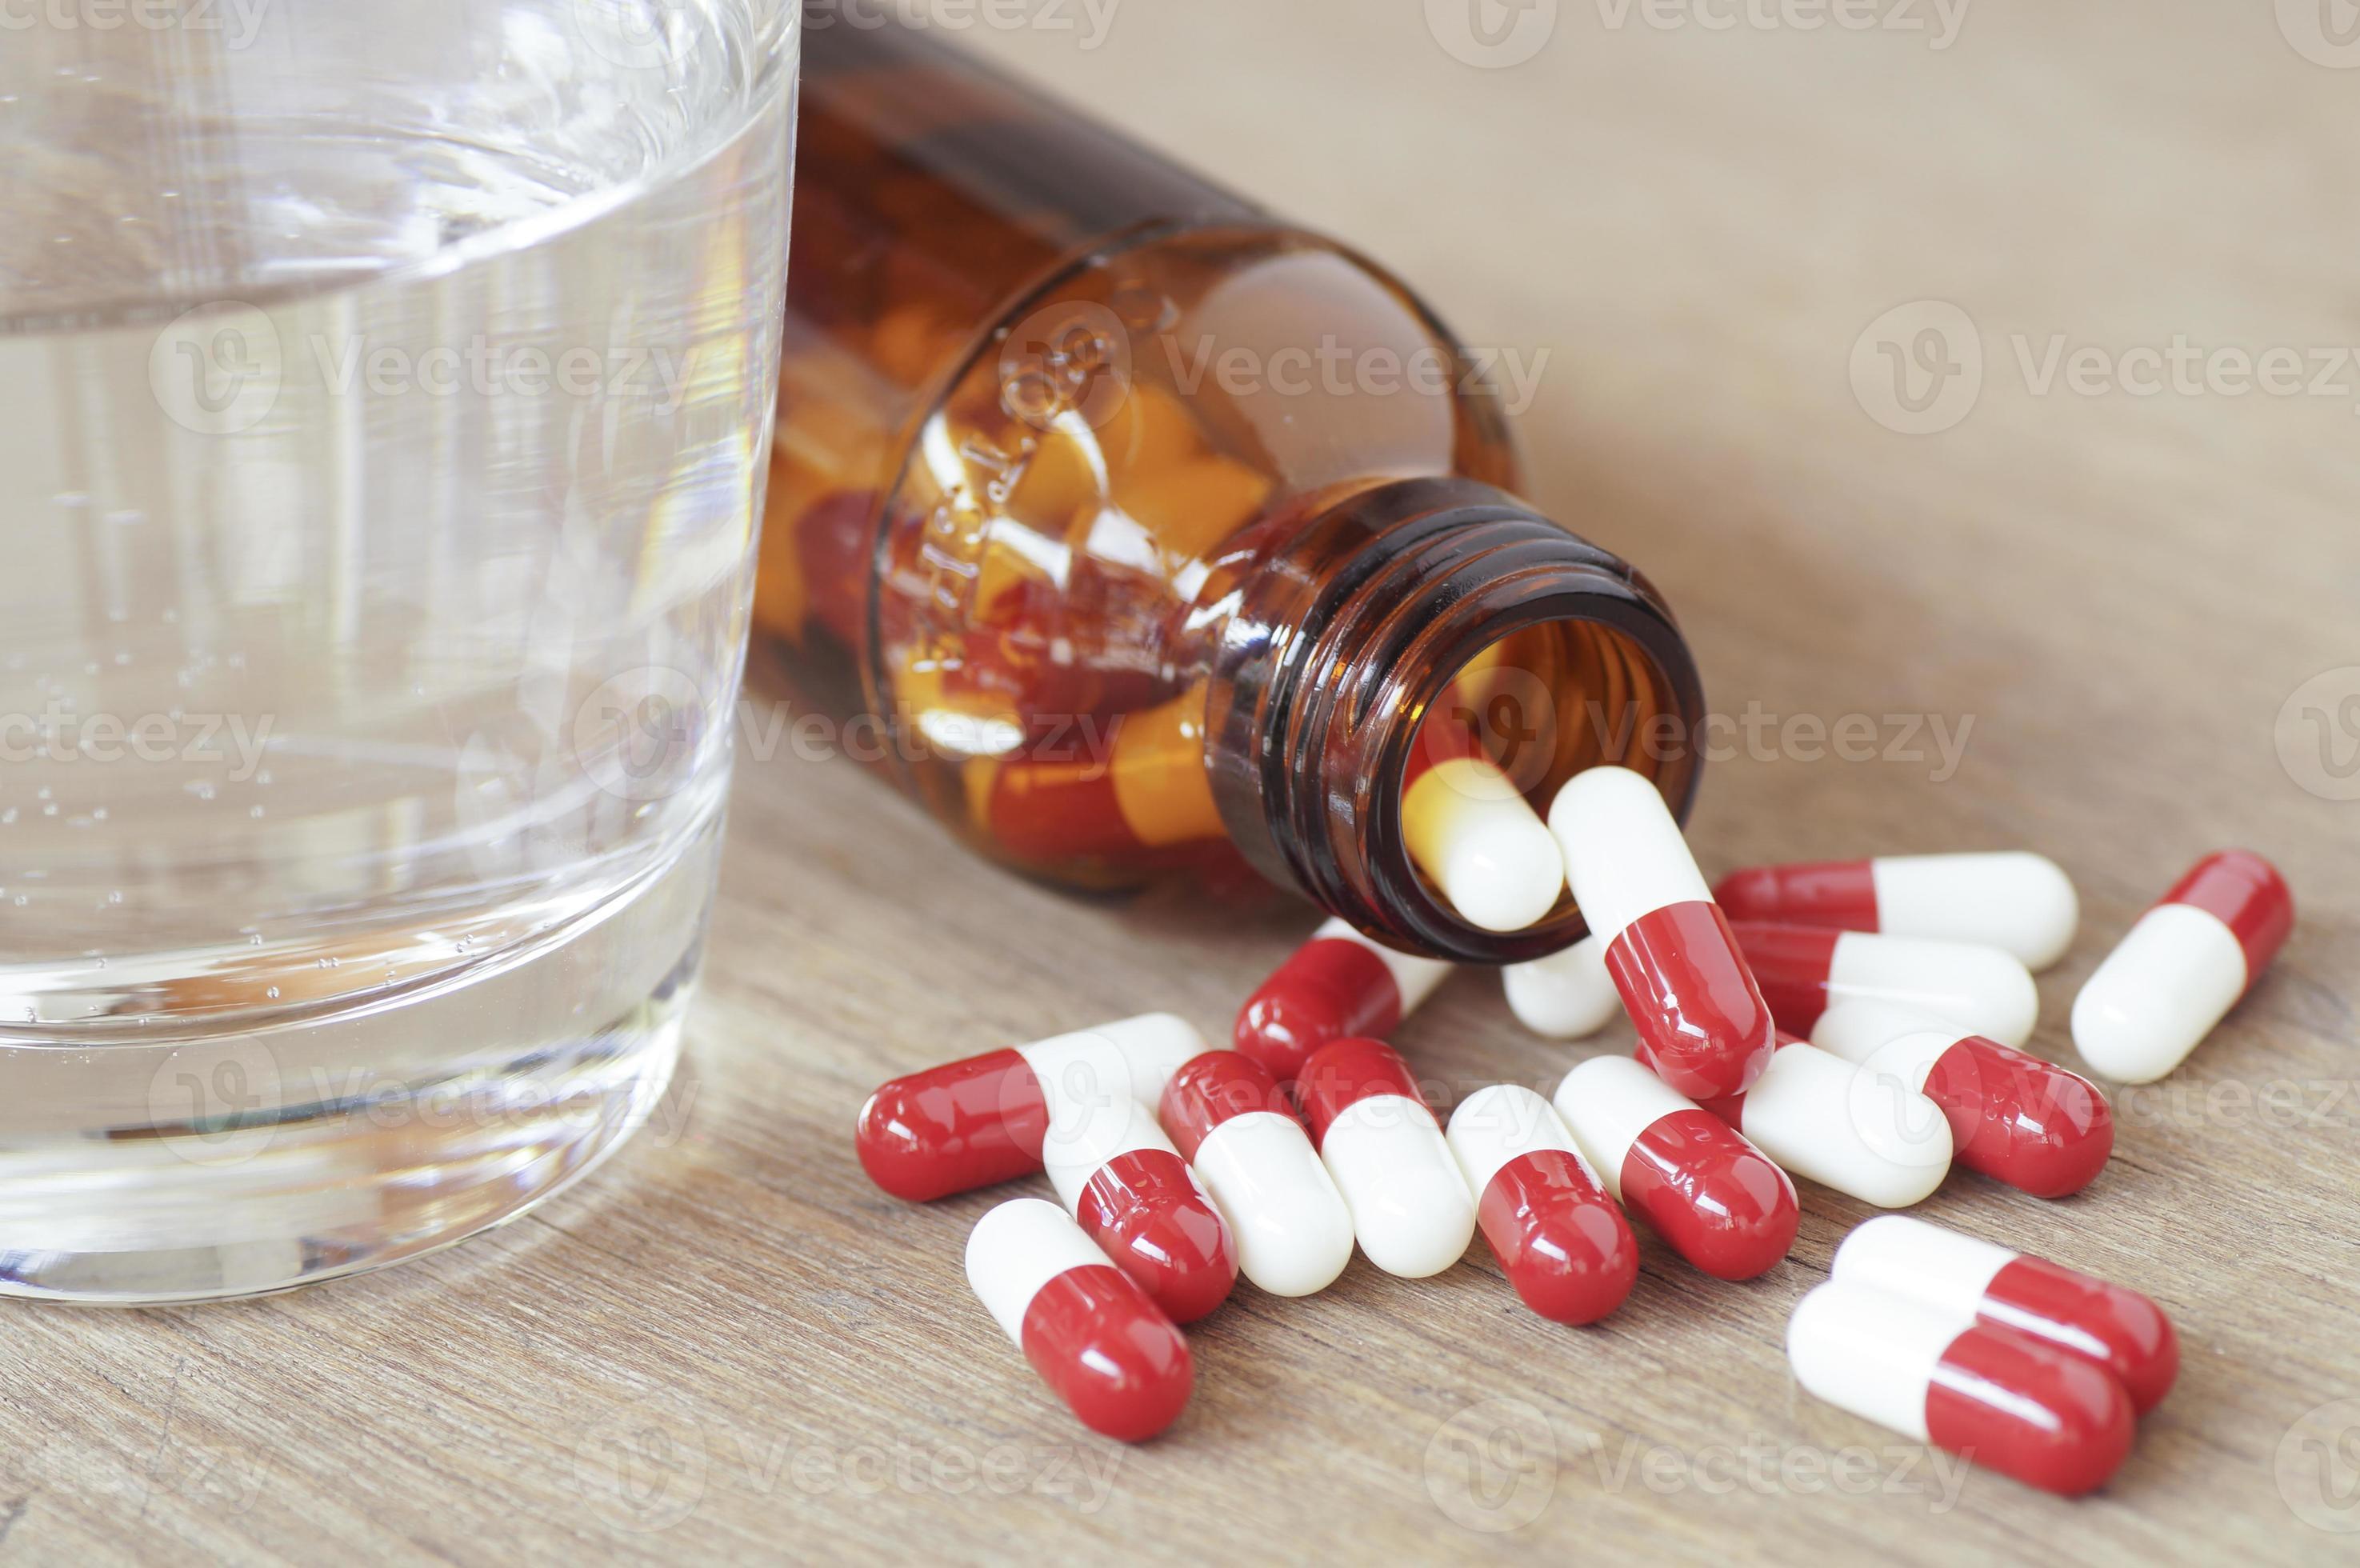 rode en witte pil capsules en glas op fles gieten op houten tafel foto